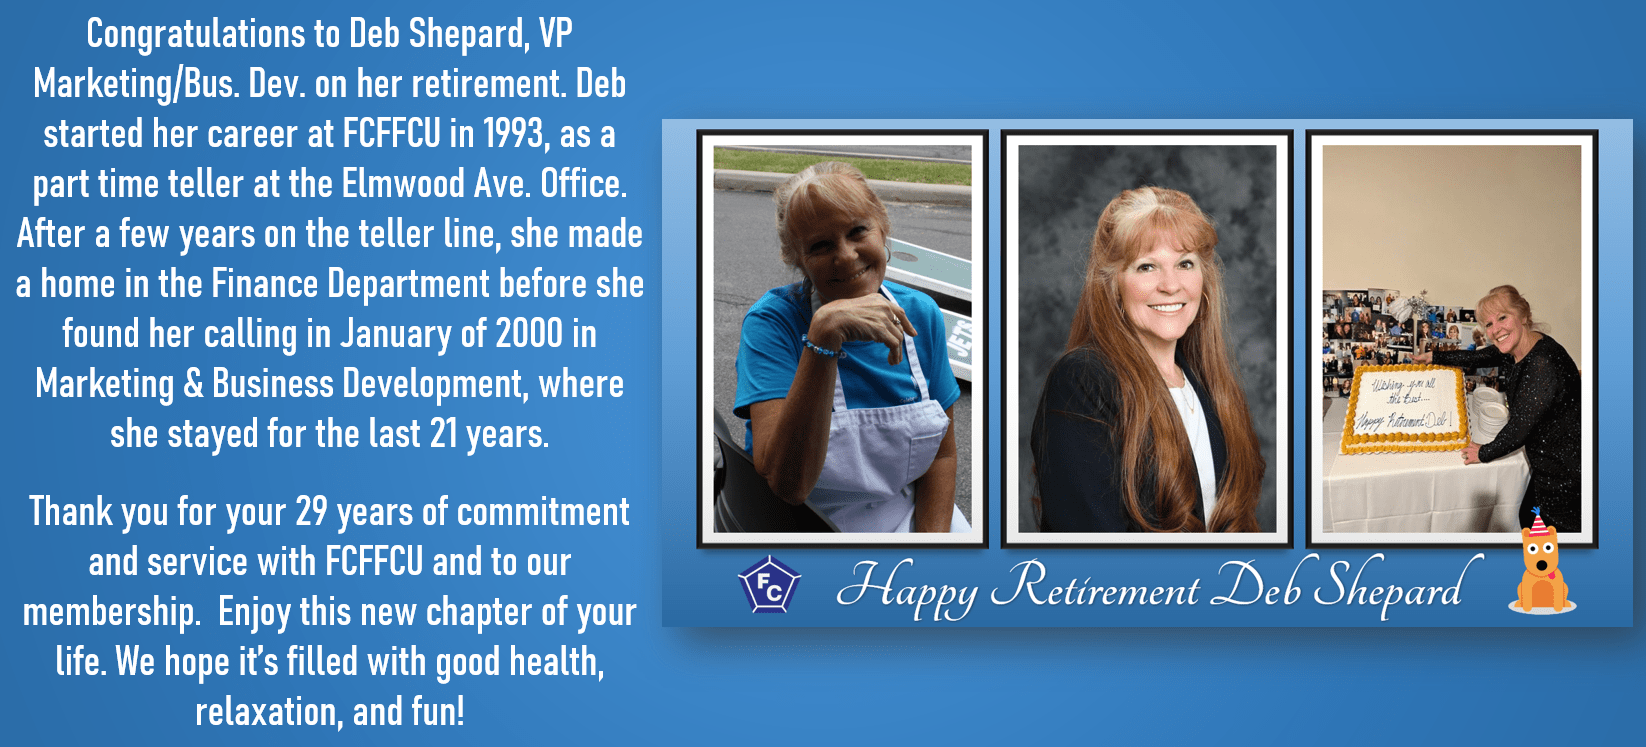 Happy Retirement Deb Shepard